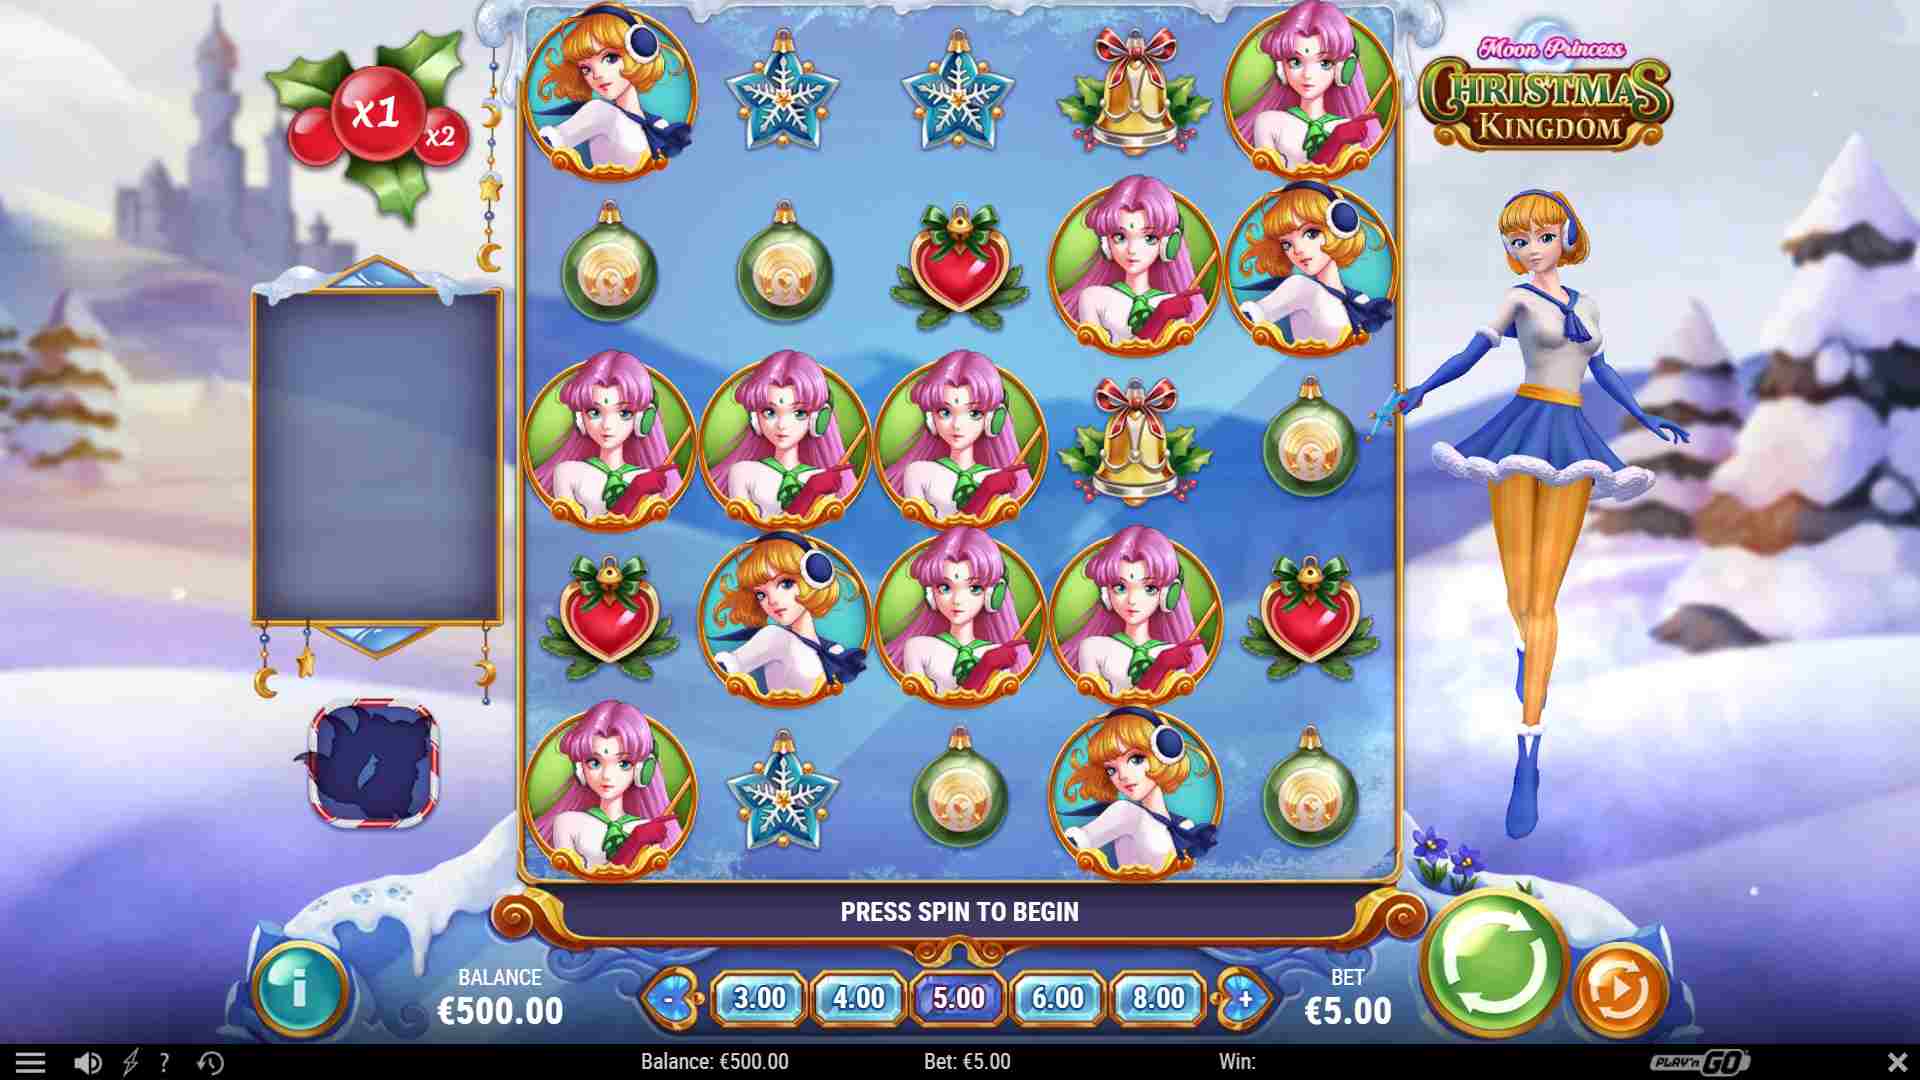 Moon Princess Christmas Kingdom Base Game